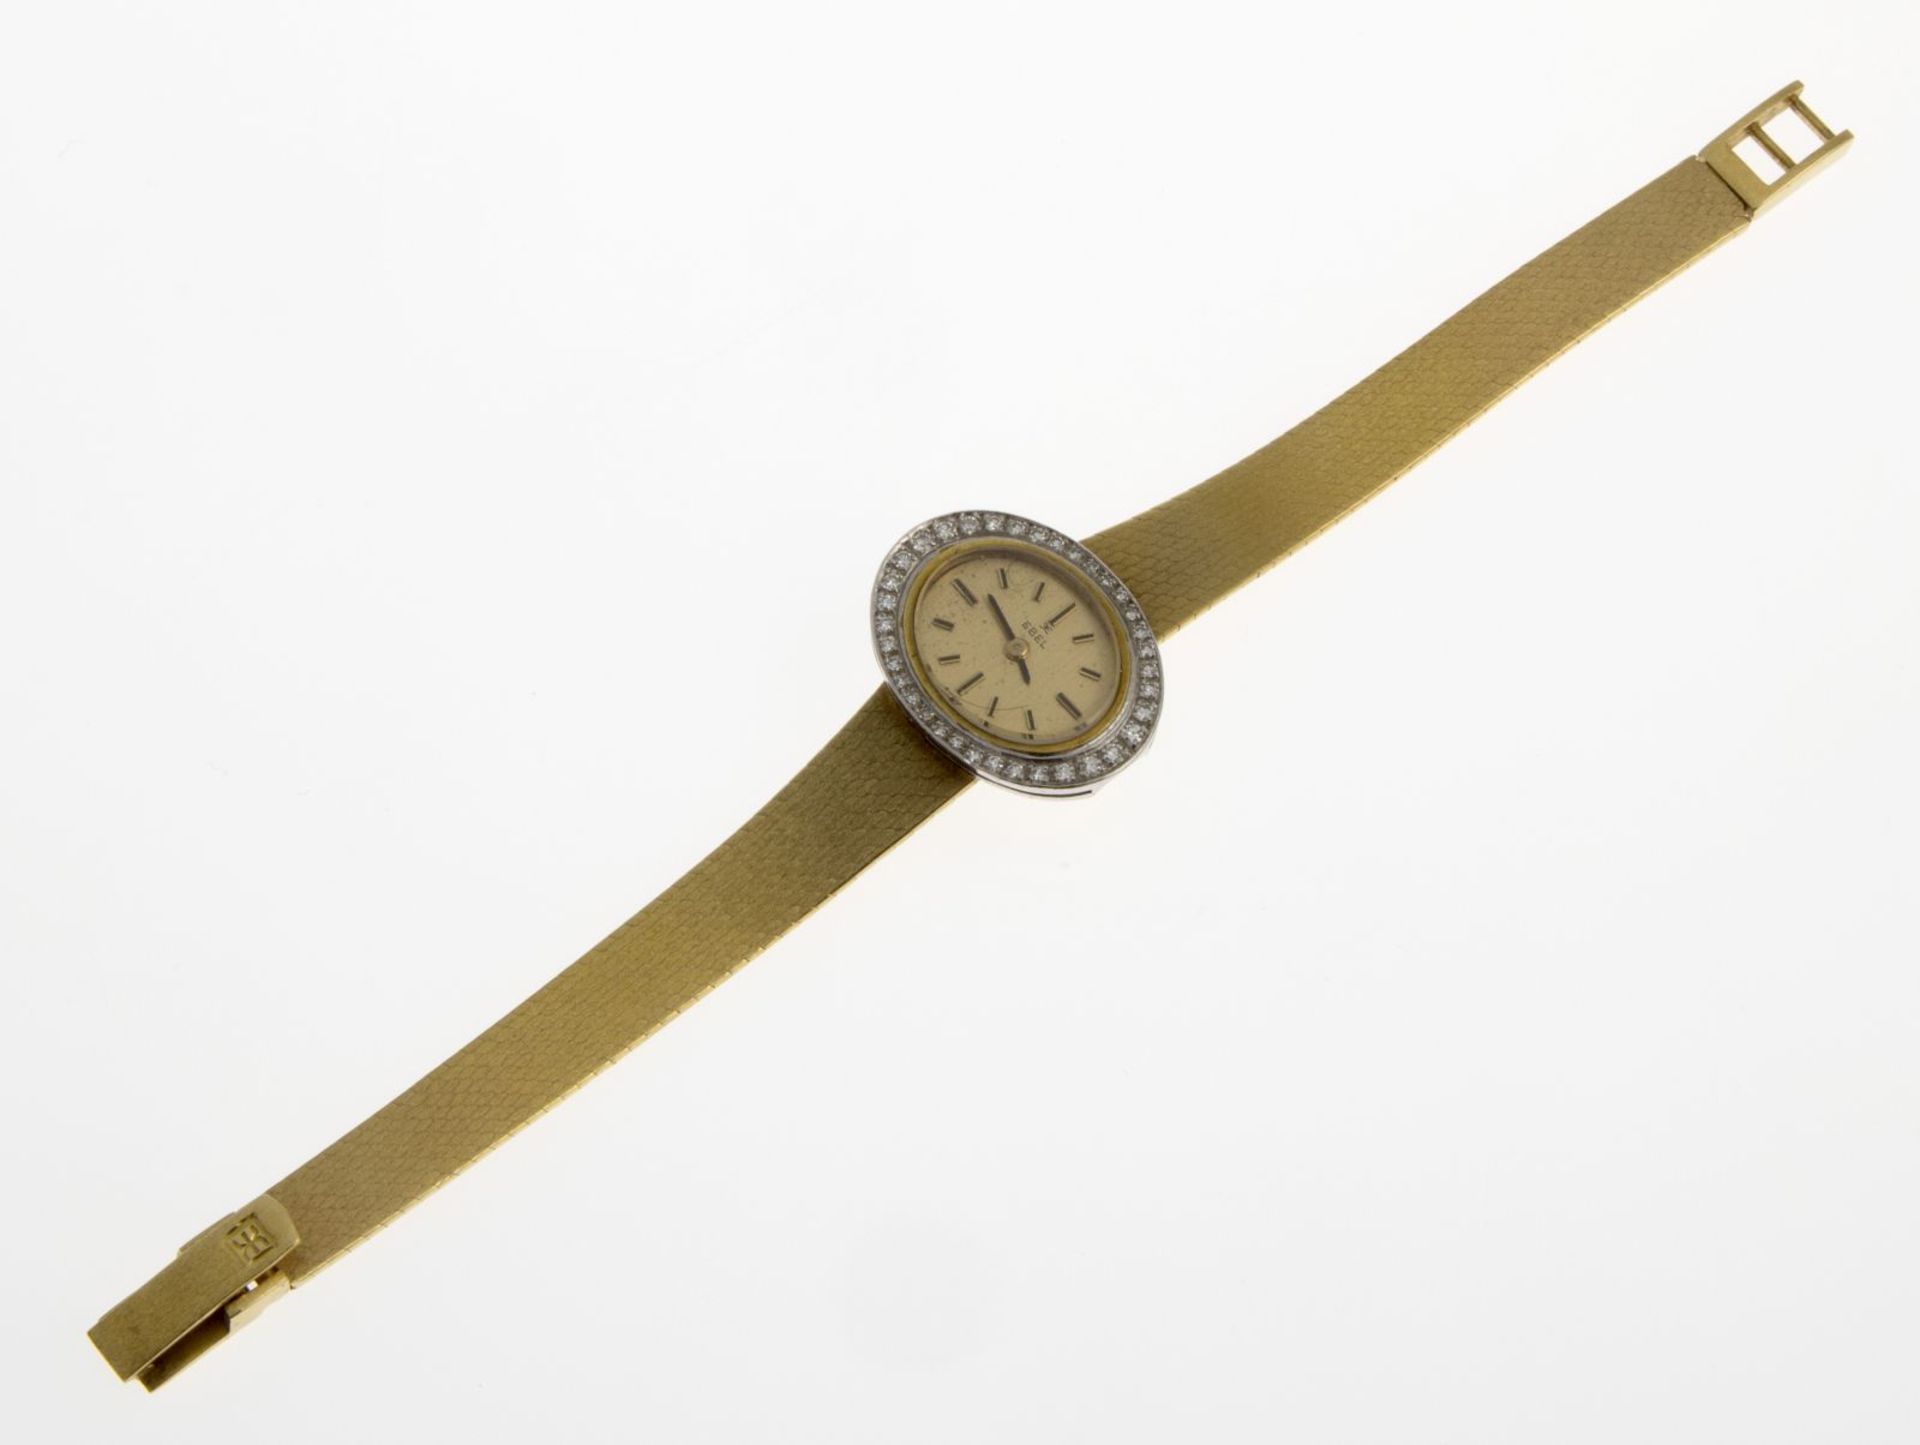 Elegante Ebel-DamenschmuckuhrOvales Gehäuse und Armband aus Gelbgold 750, mattiert. Weißgoldlünette, - Bild 2 aus 3